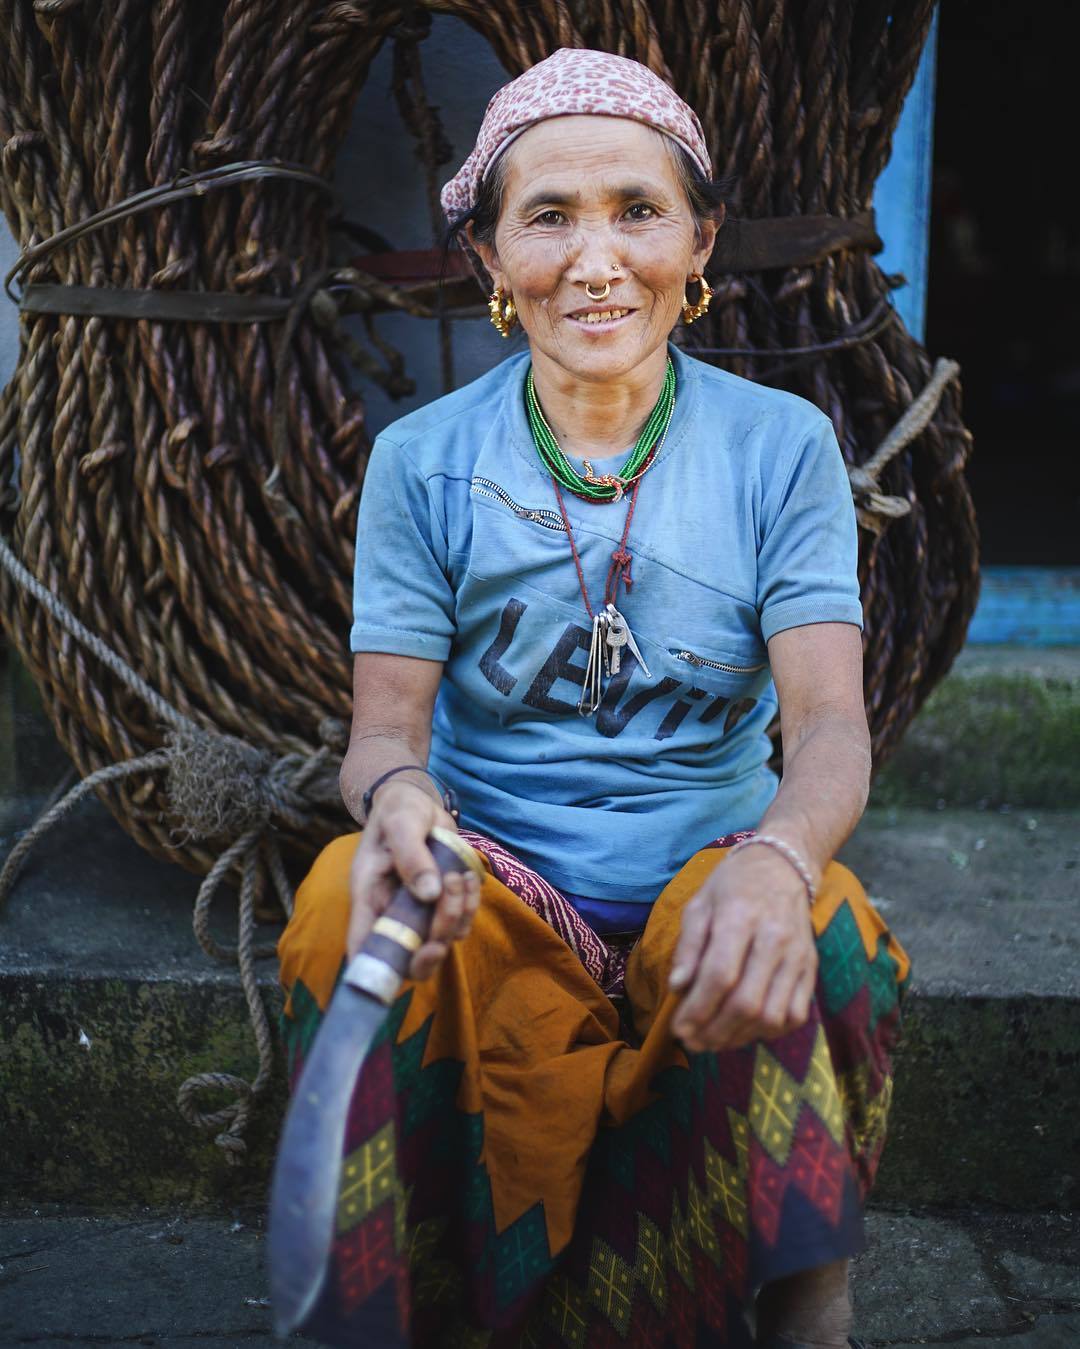  尼泊尔东部小村庄一位老人的肖像，来自摄影师Renan Ozturk。 